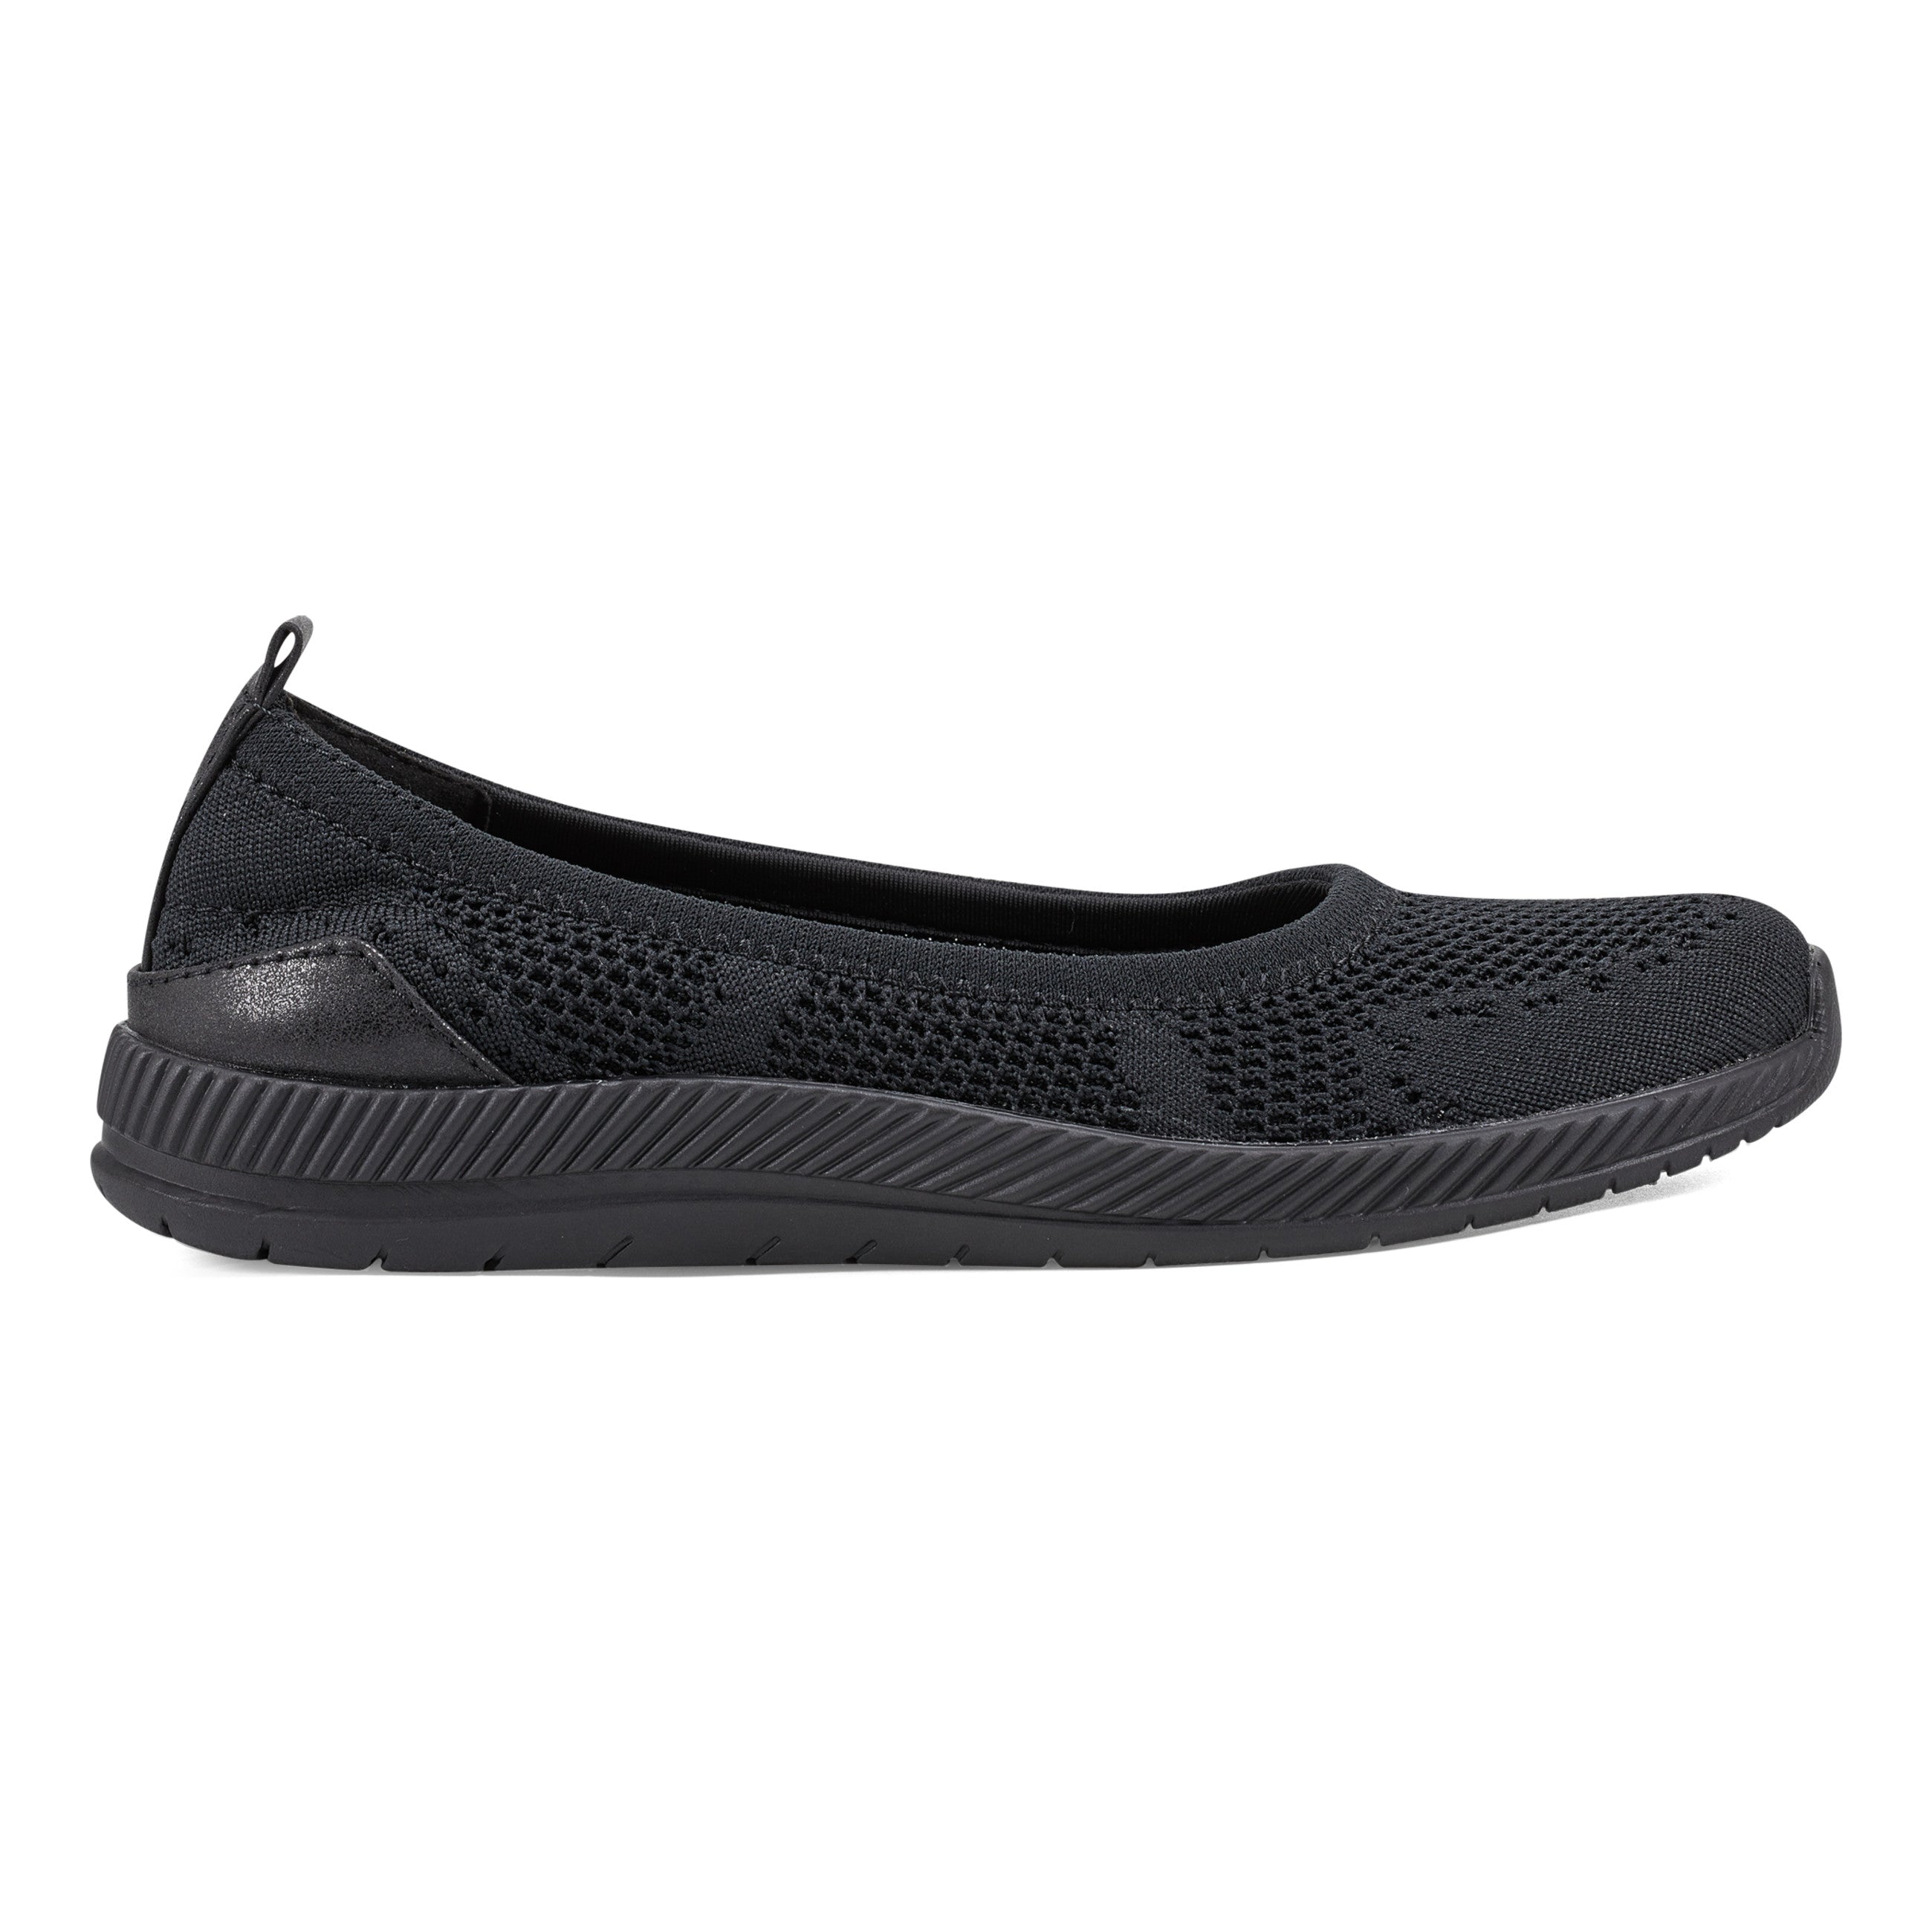 Skechers® Microburst Women's Skimmer Shoes